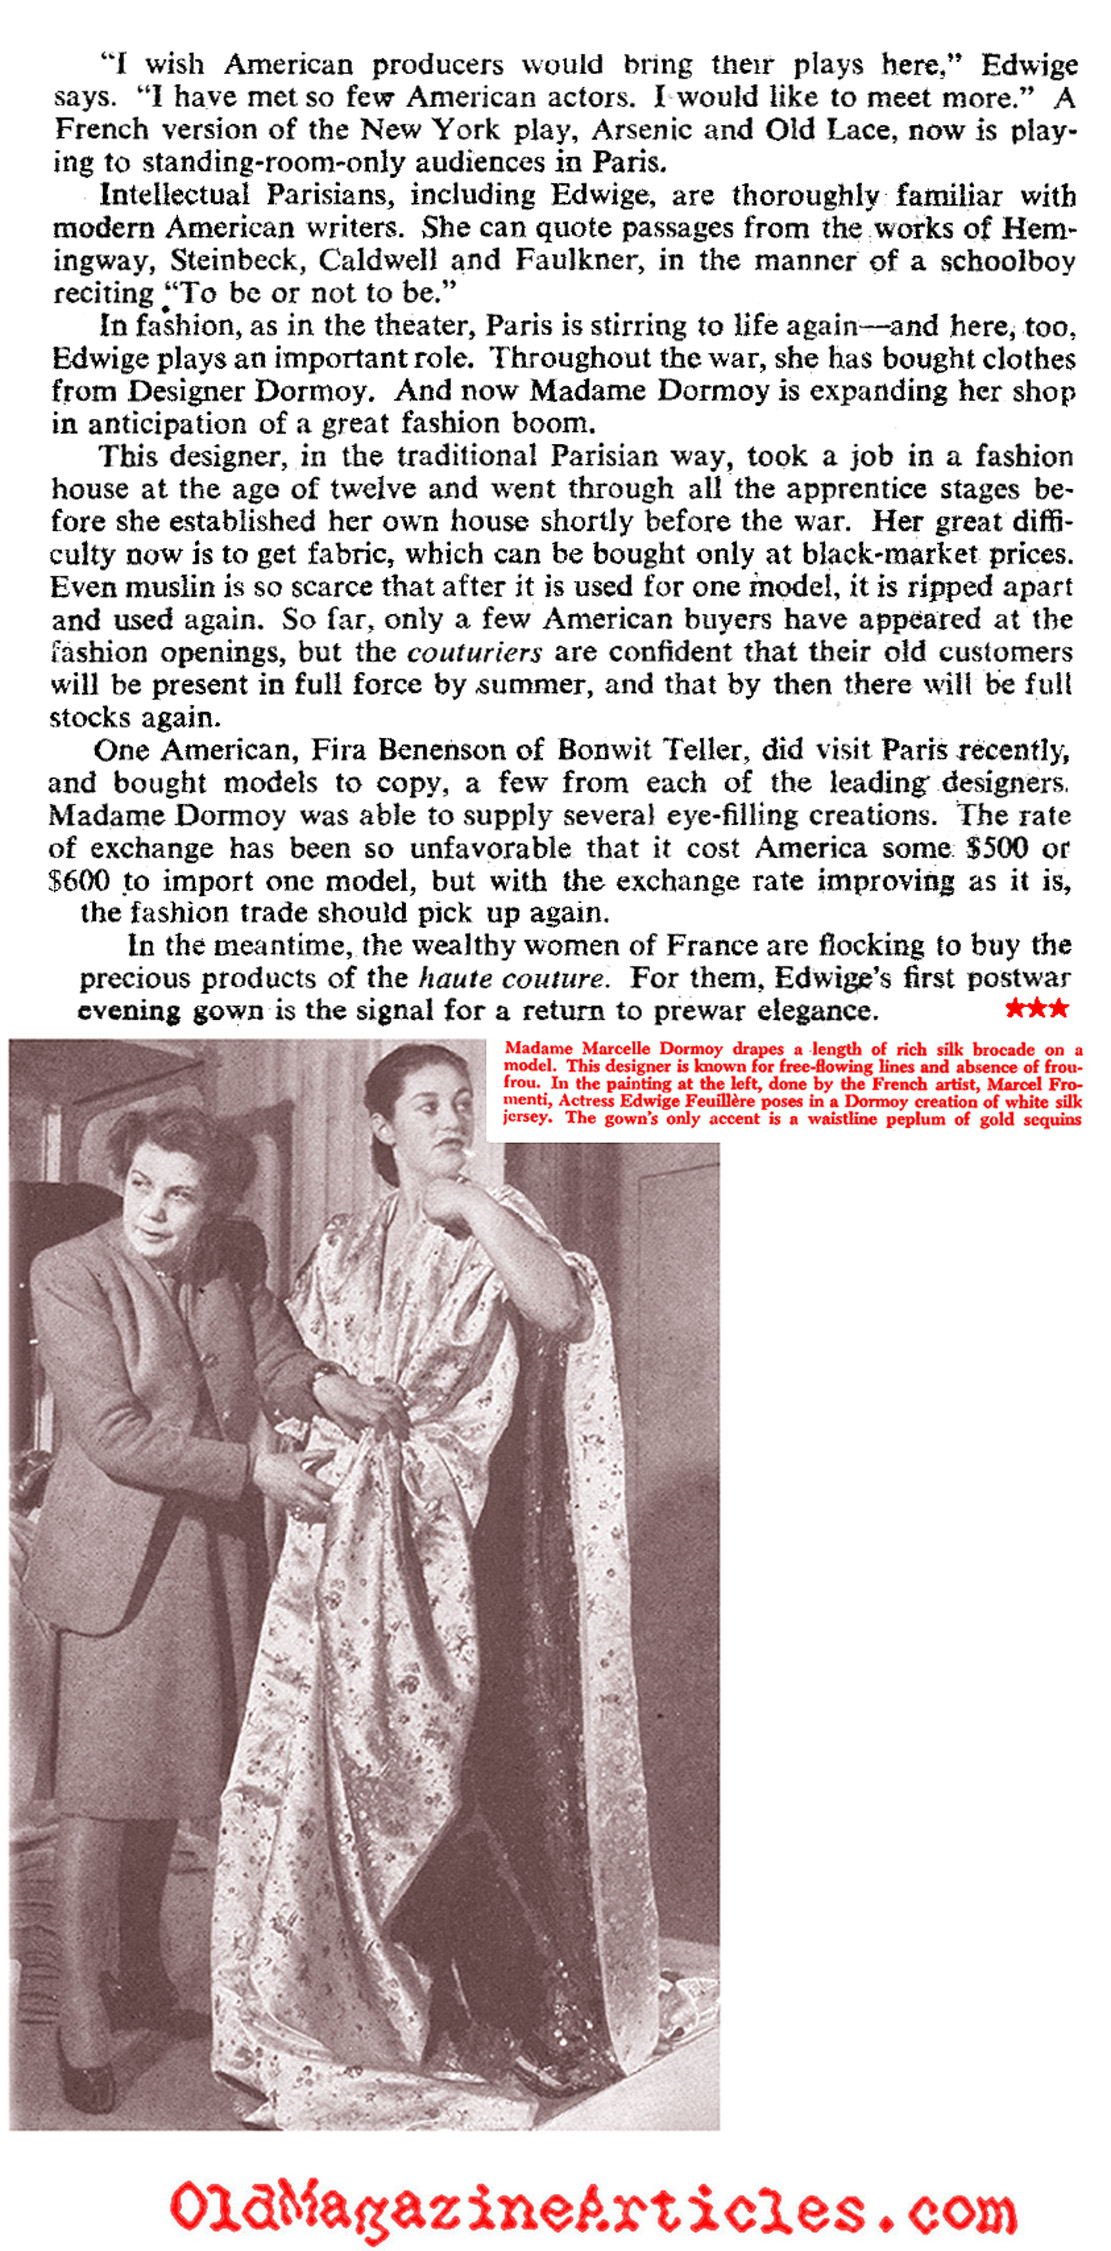 Paris Is Back! (Collier's Magazine, 1946)